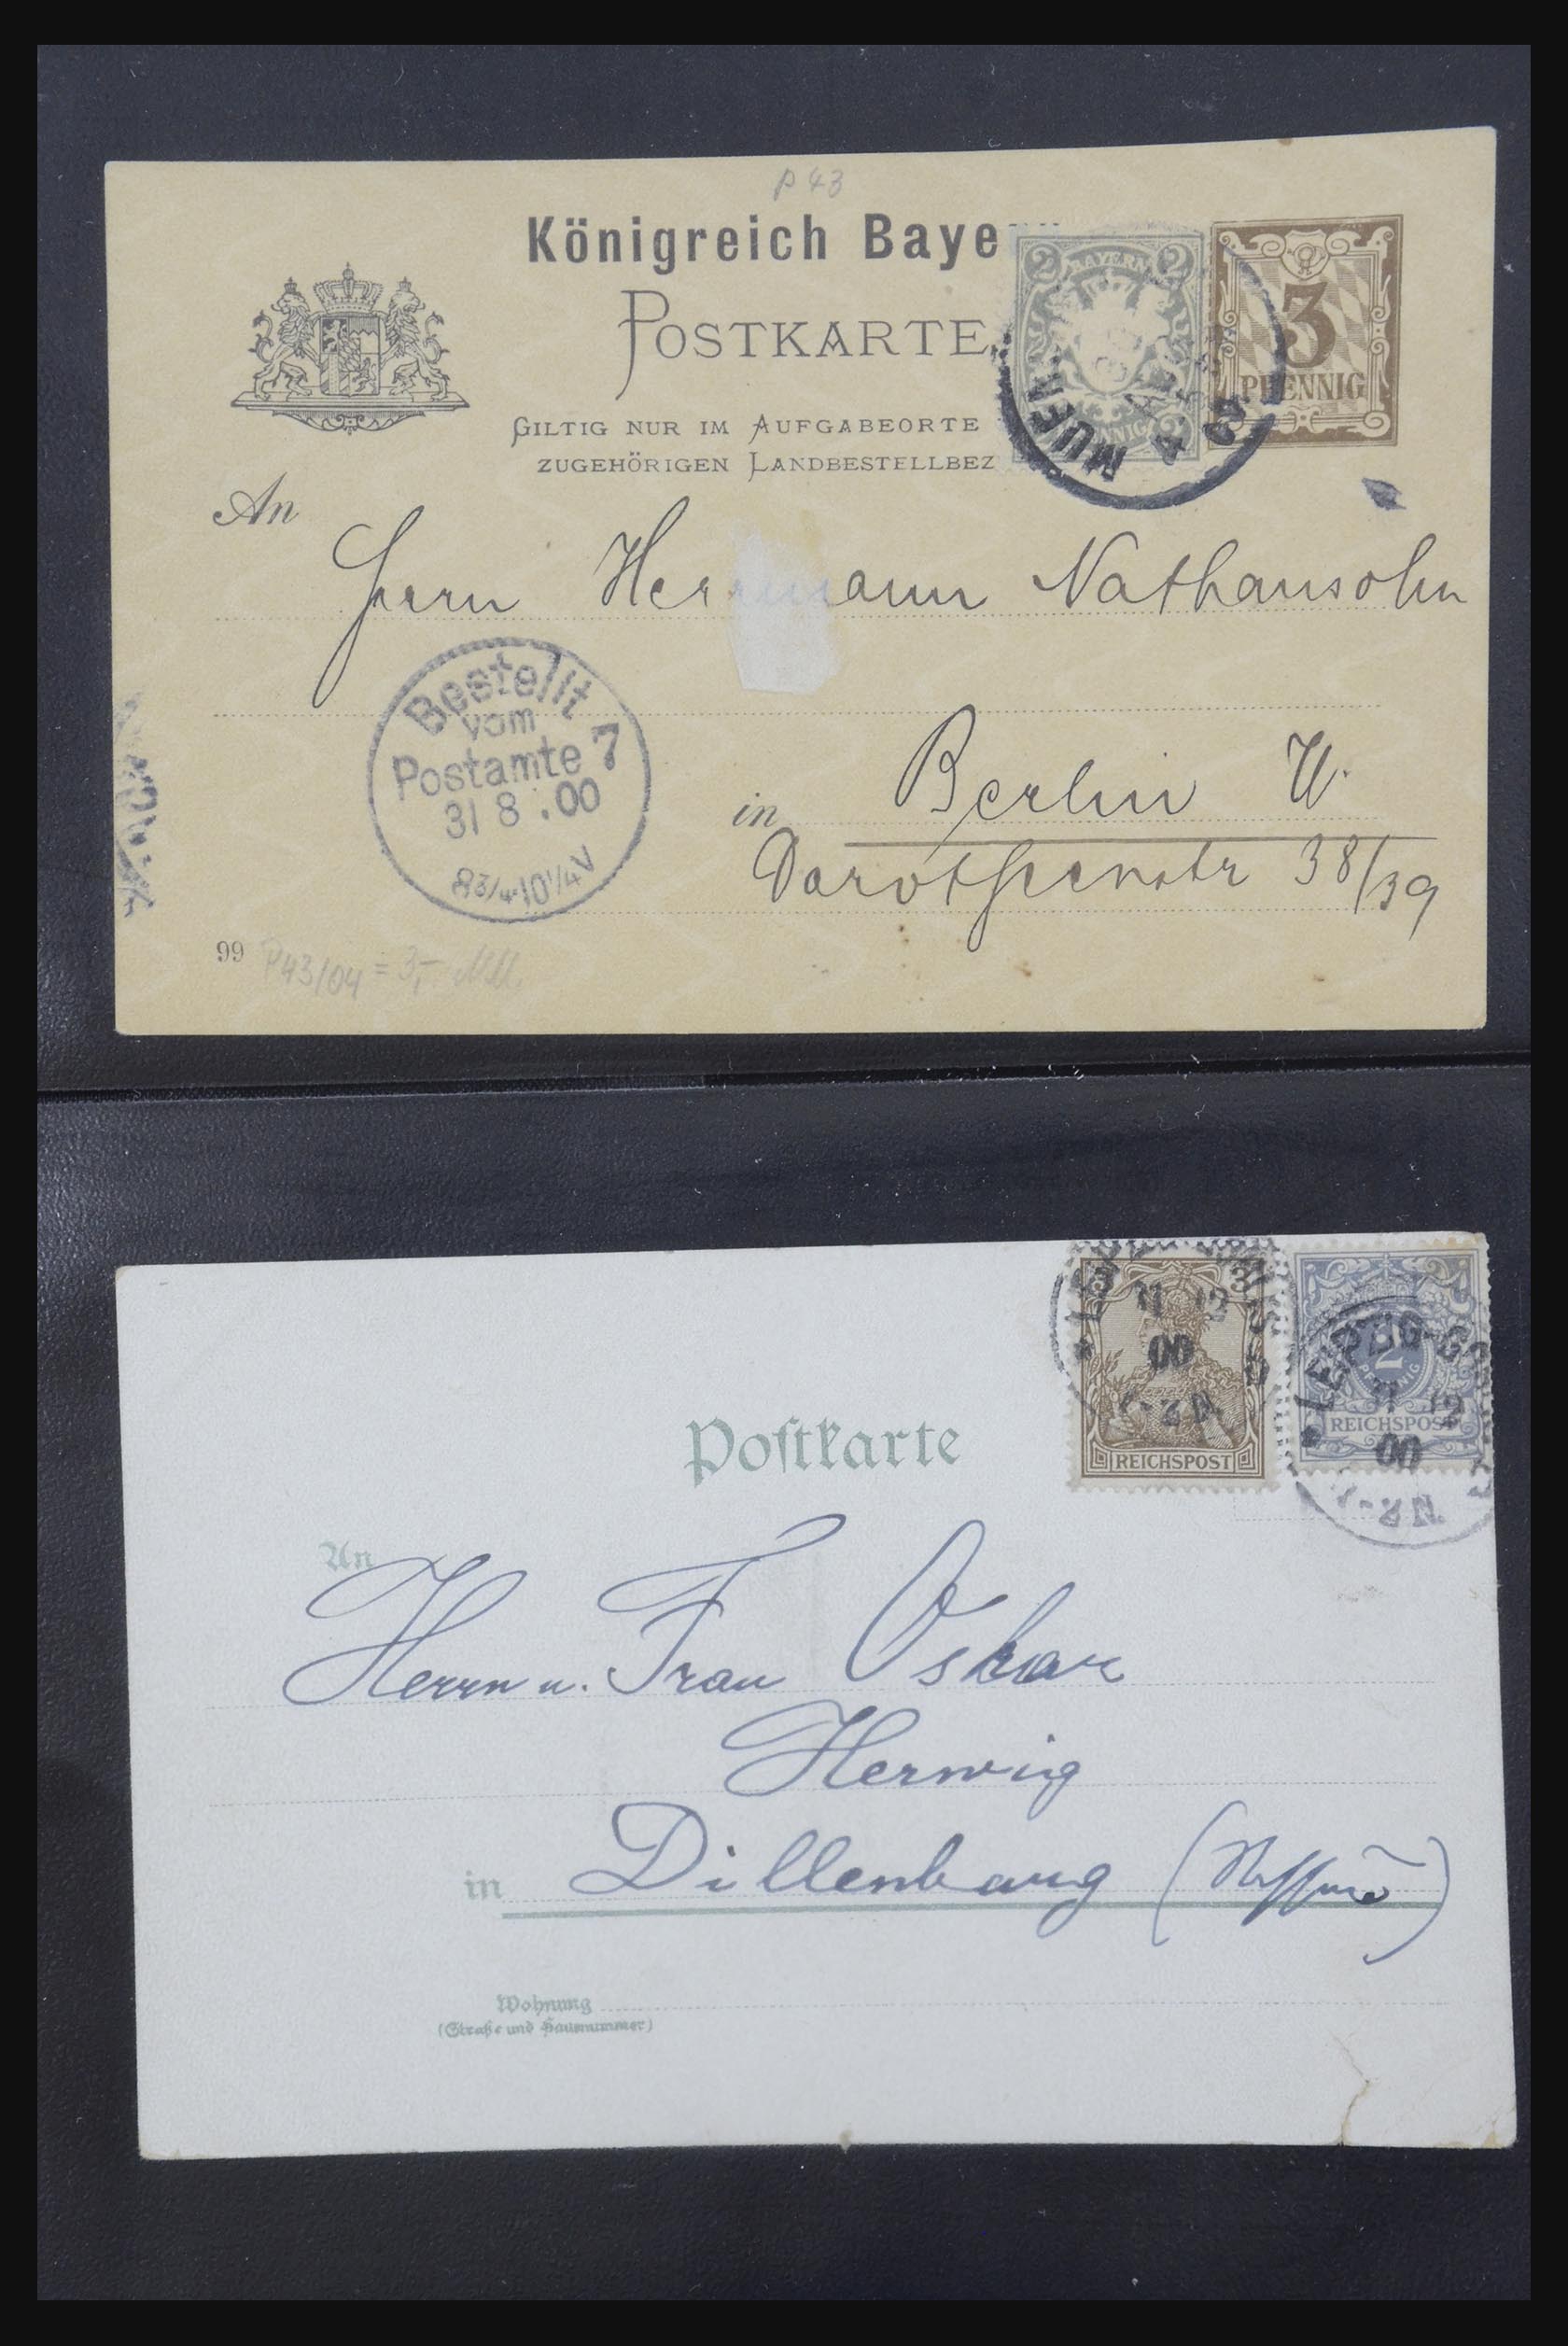 31952 409 - 31952 German Reich cards.